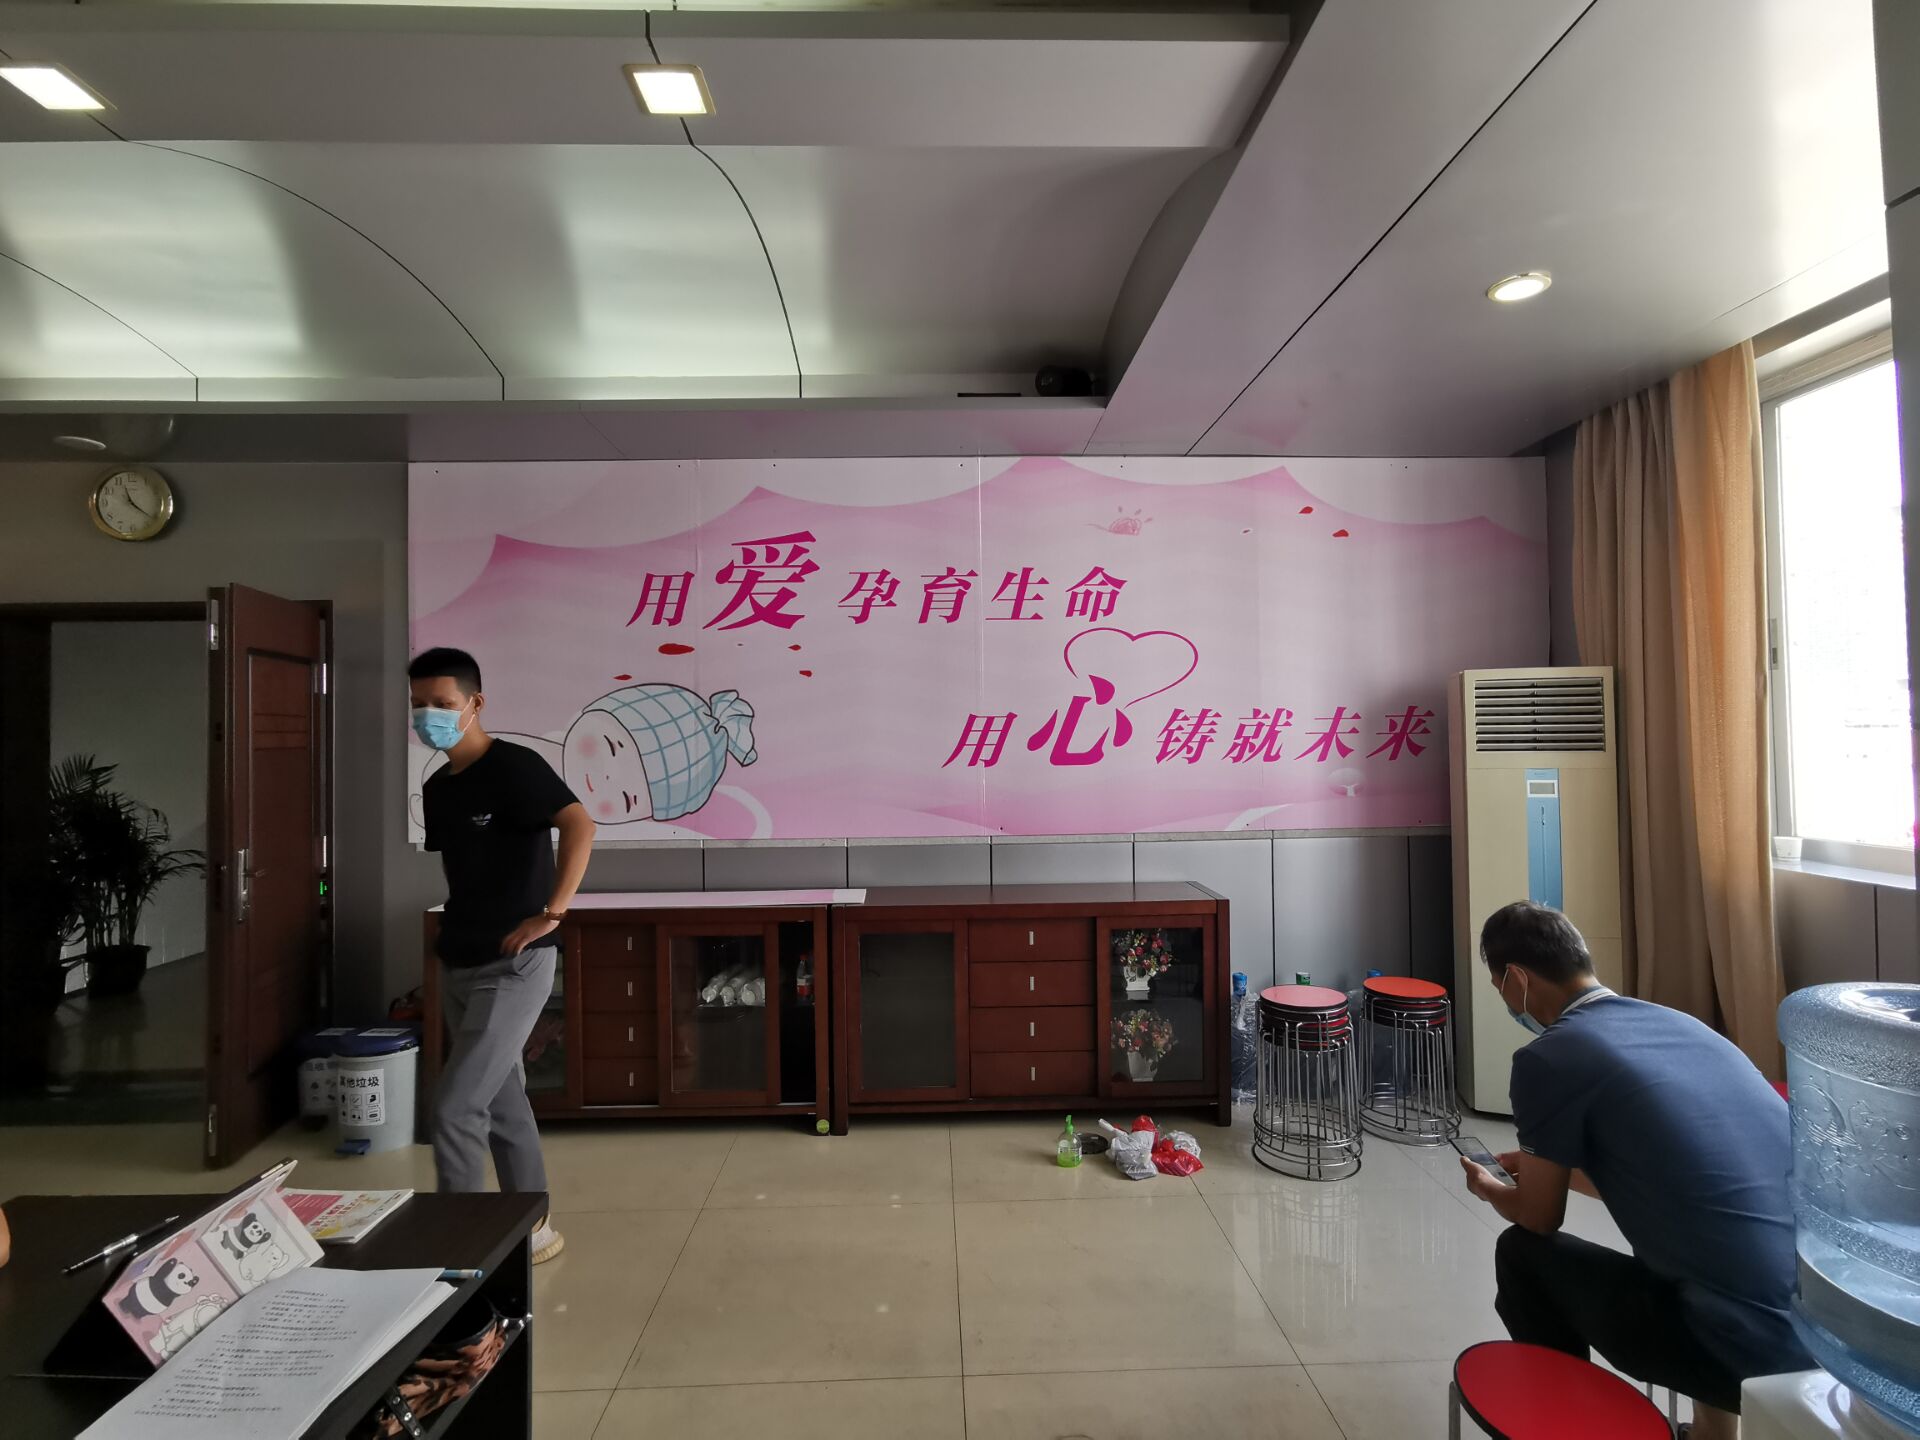 广西区生殖医院广告制作与安装